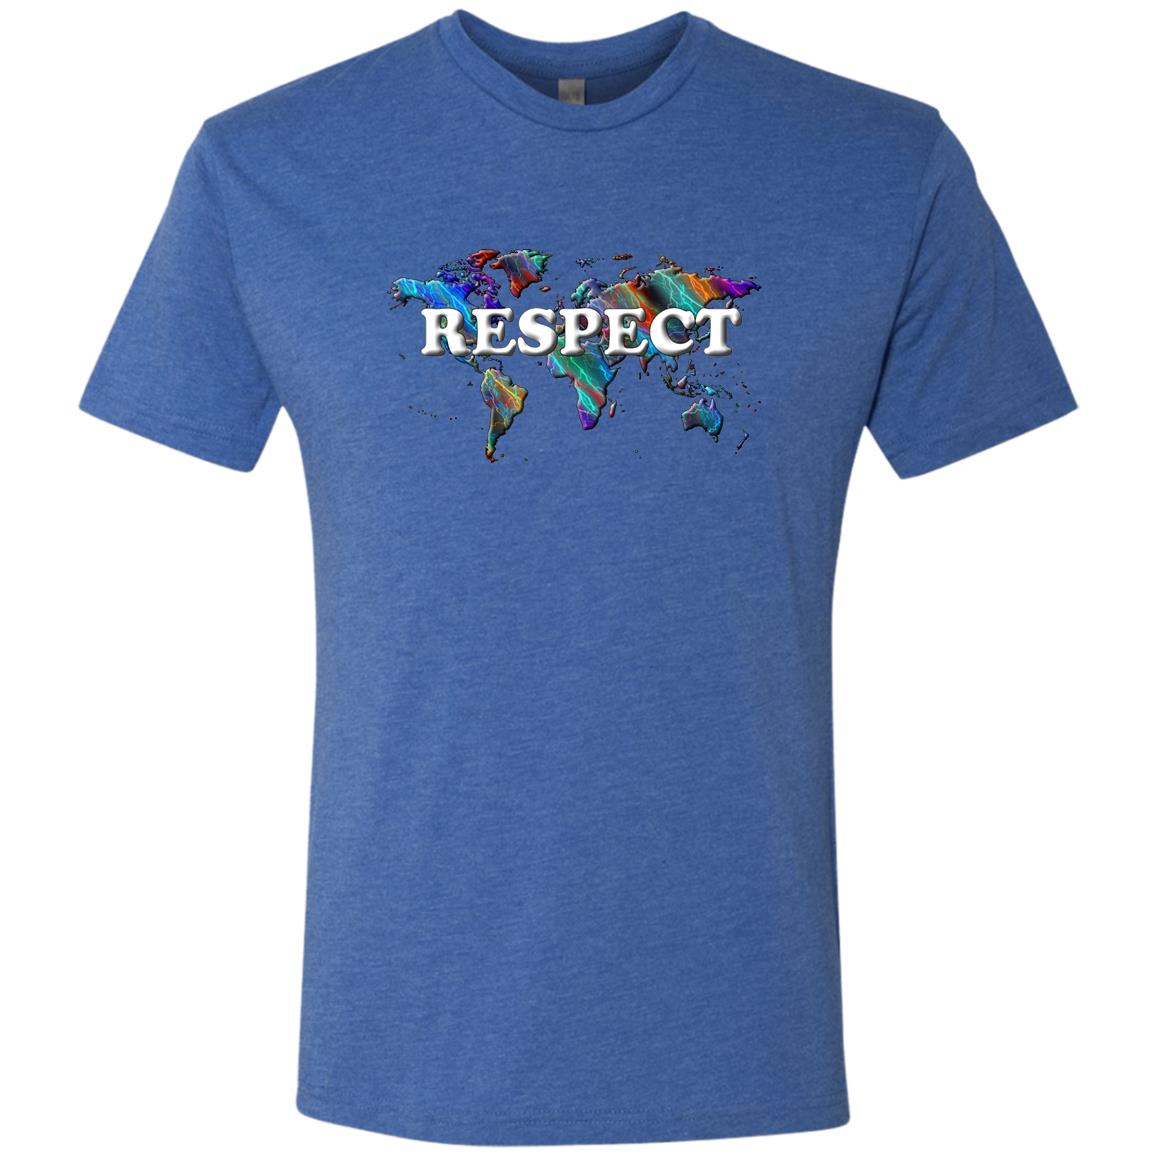 Respect Statement T-Shirt